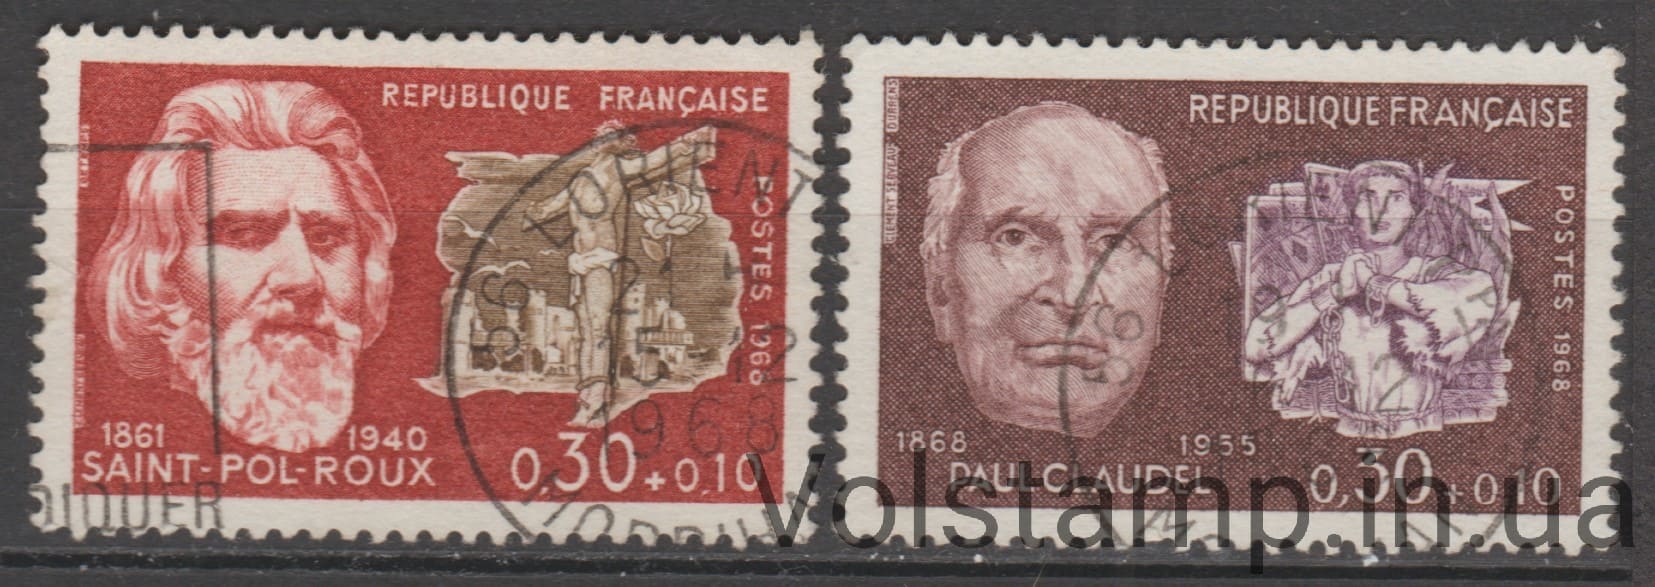 1968 Франция Серия марок (Известные люди (1968)) Гашеные №1629-1630